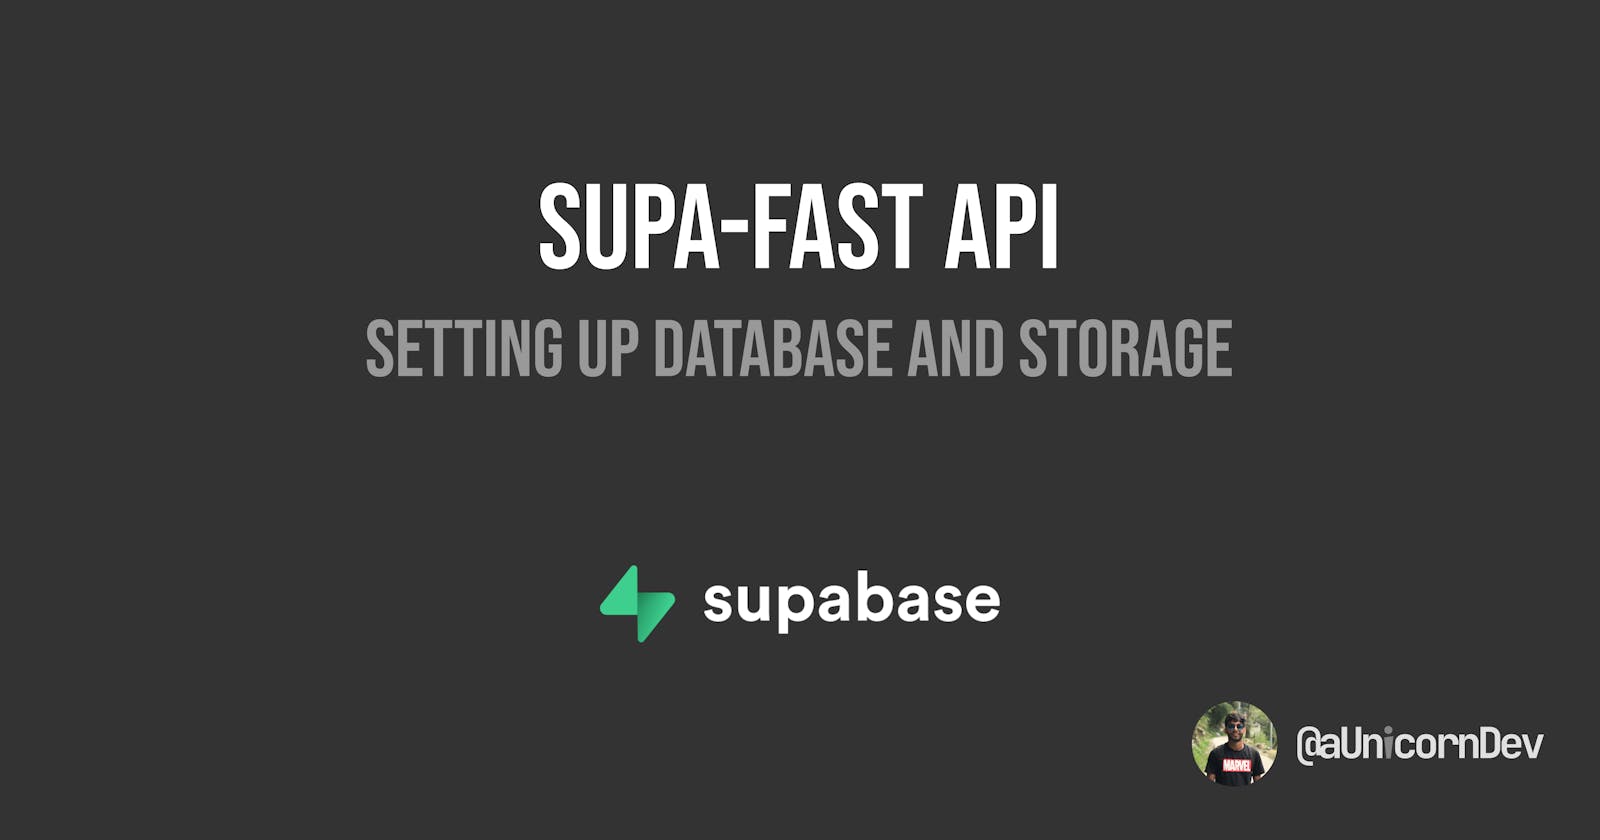 Supa-Fast API(Supabase FastAPI): Setting up Database and Storage